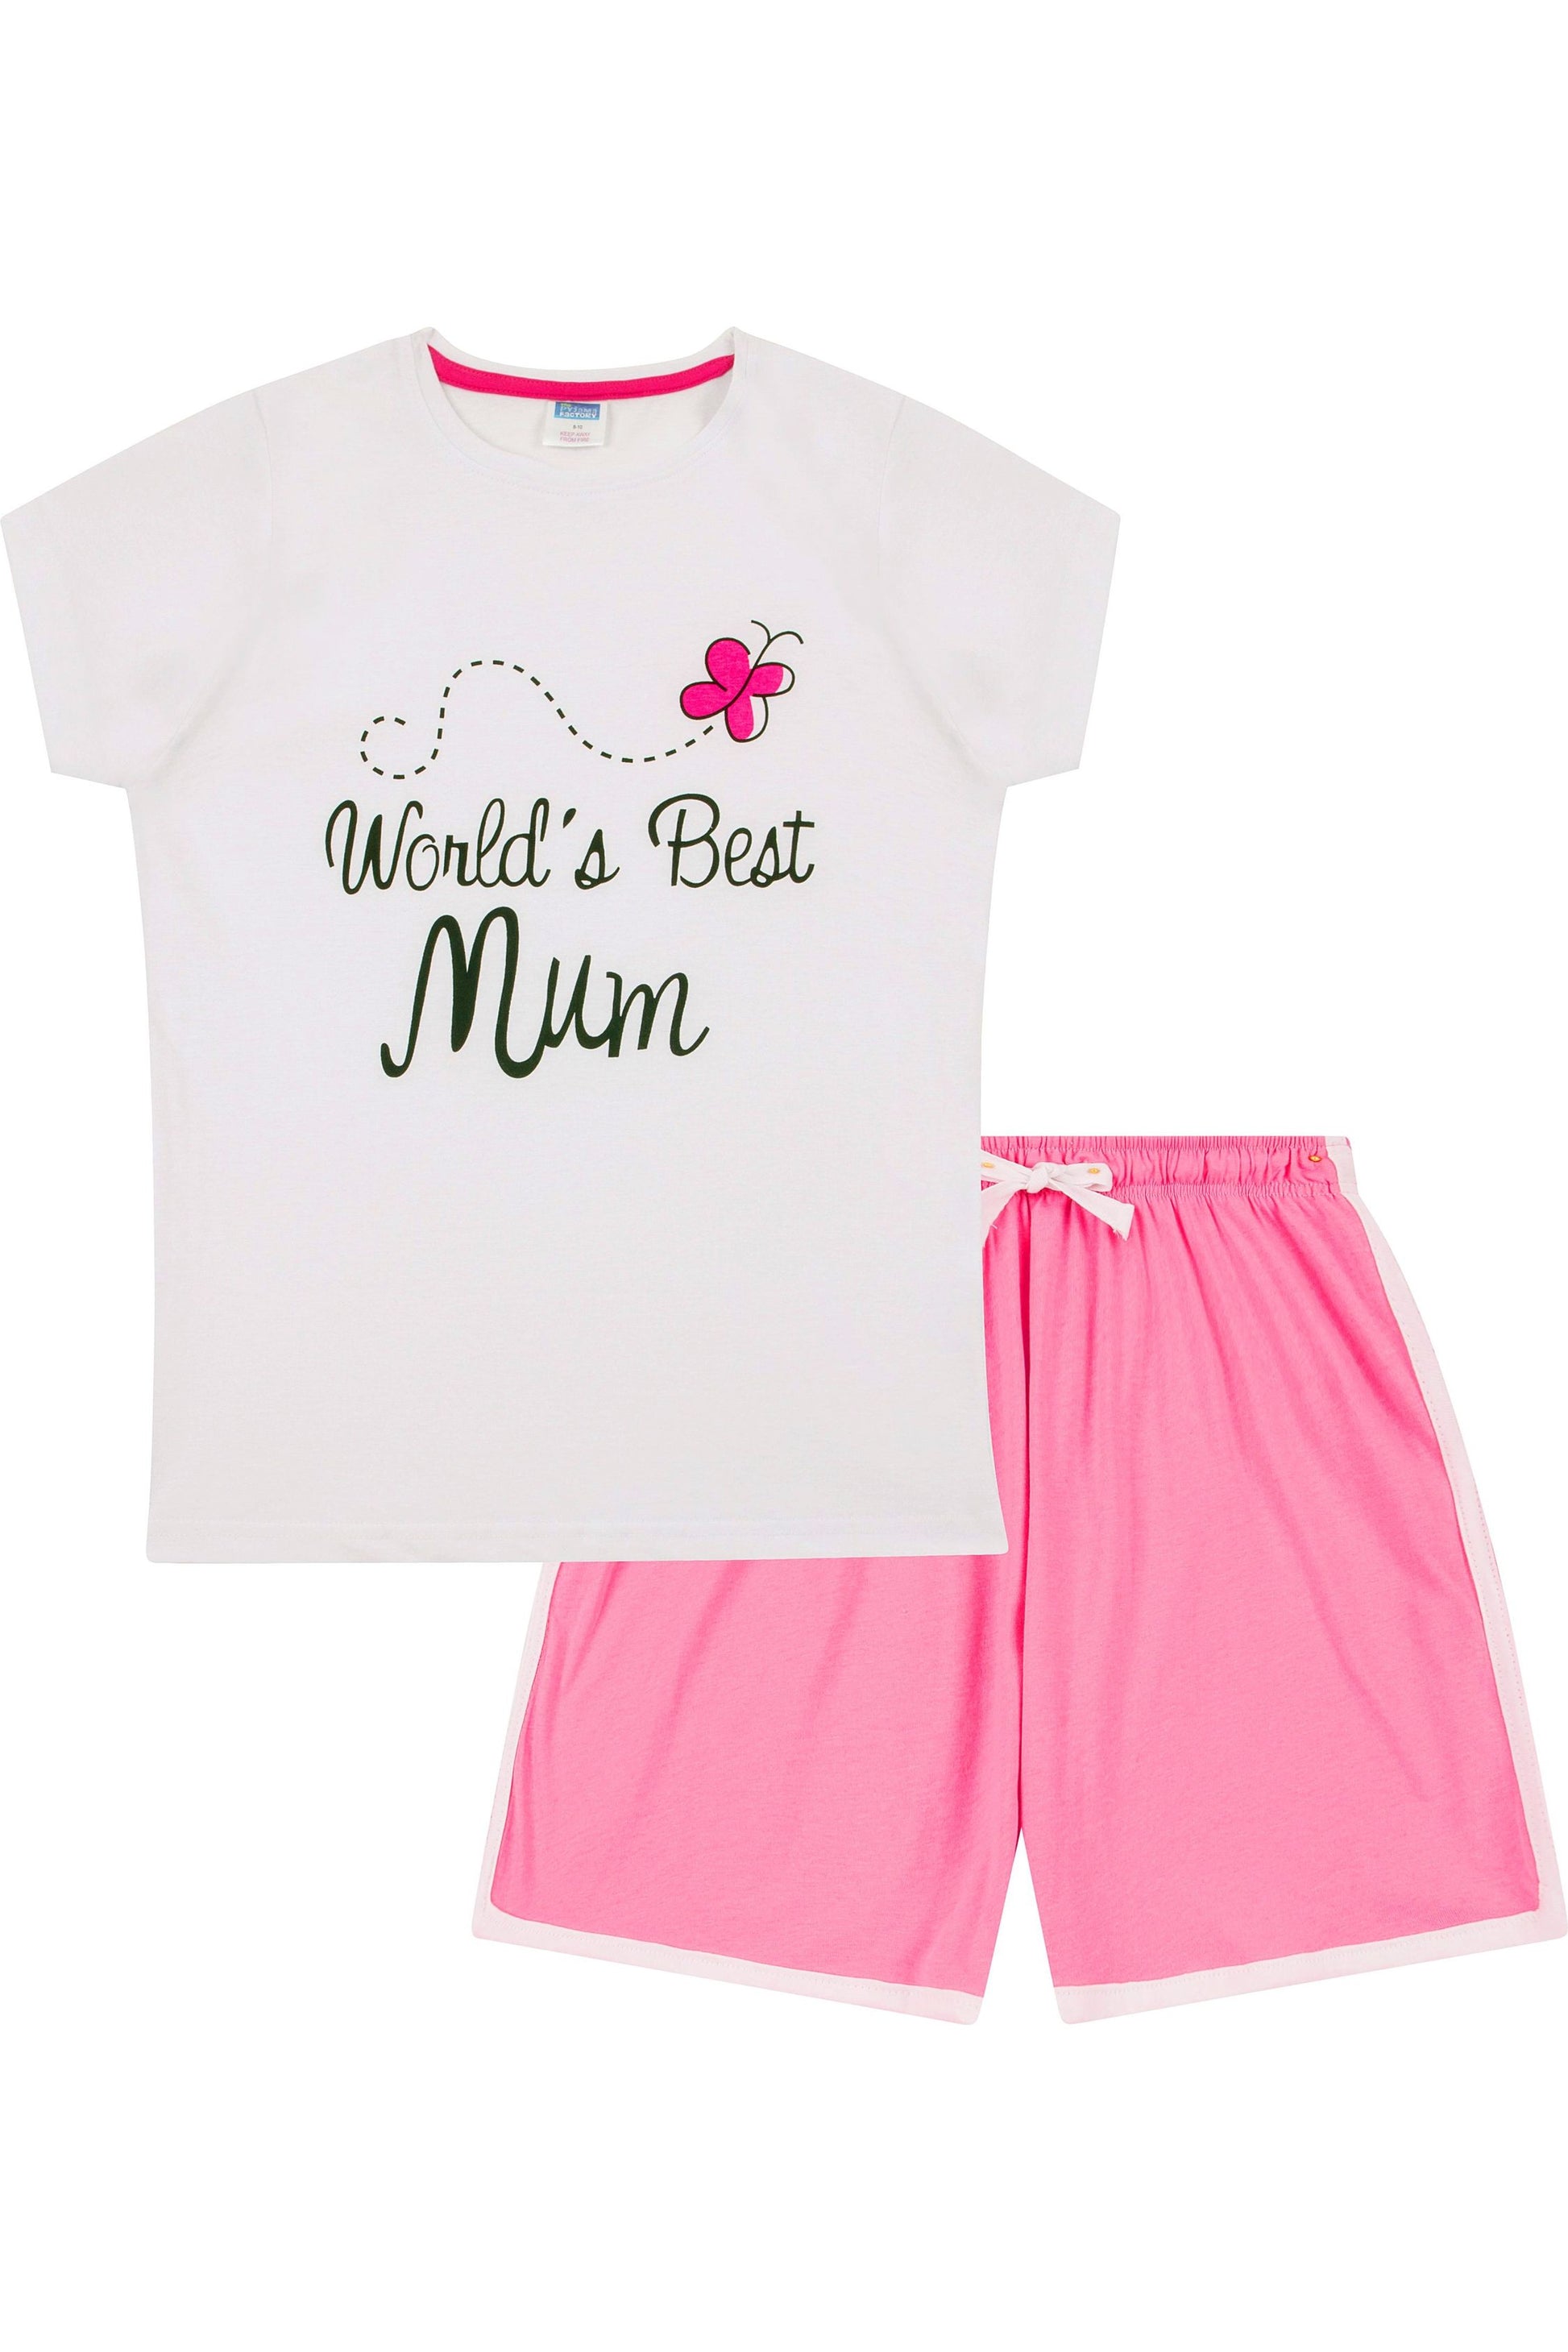 Ladies World's Best Mum Short Pyjamas - Pyjamas.com